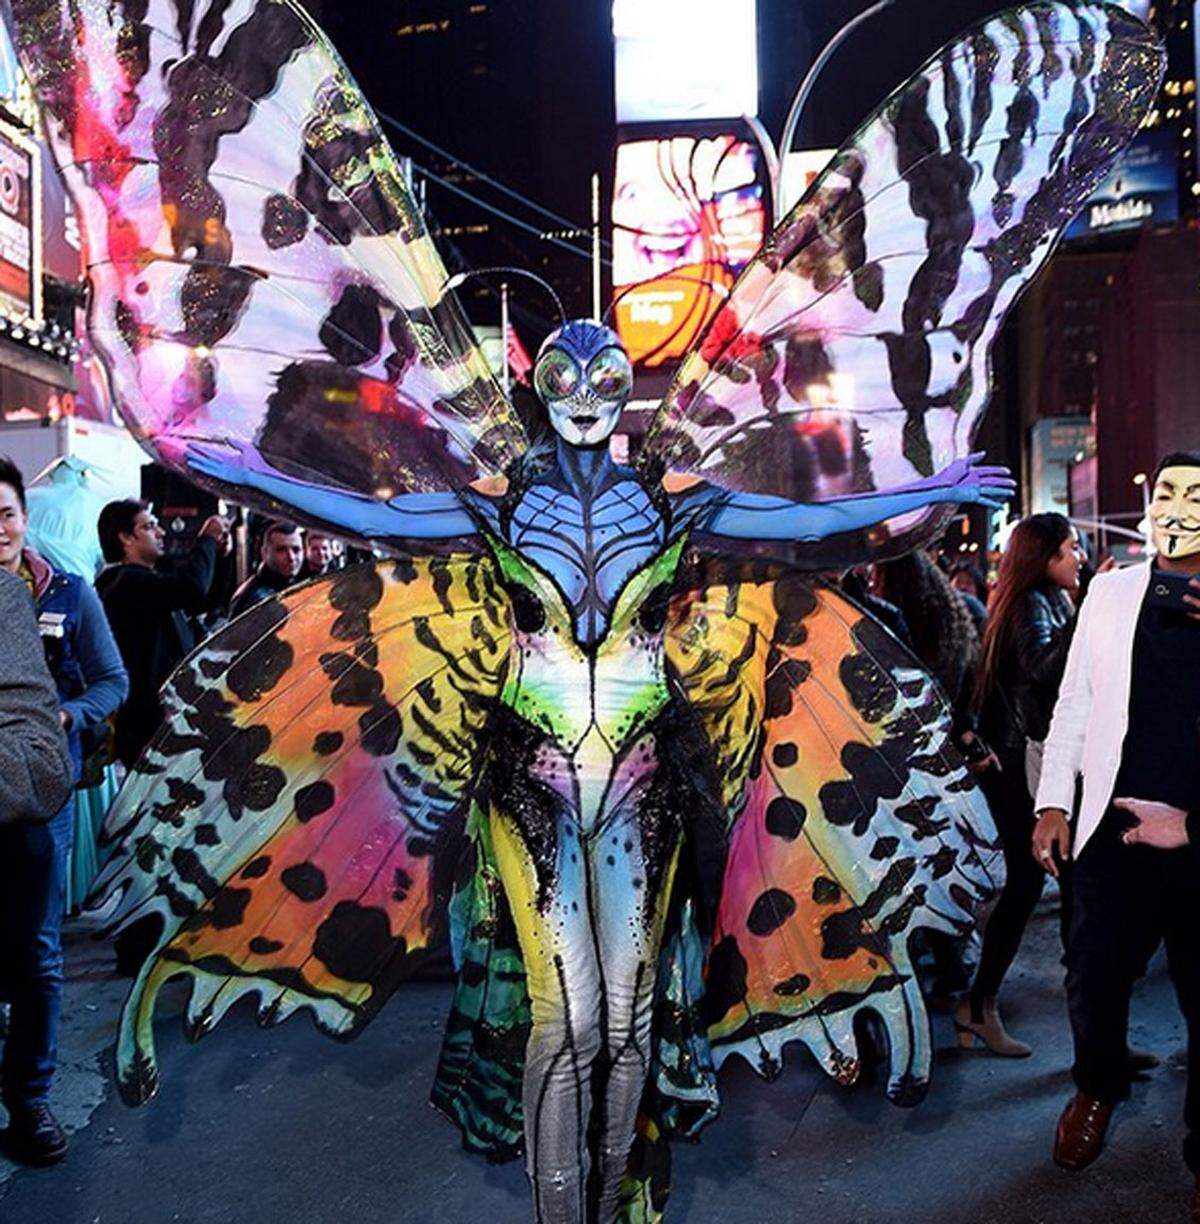 Heidi Klum ist seit Jahren für ihre aufwendigen Kostümiereungen zu Halloween bekannt. In diesem Jahr verkleidete sie sich als Schmetterlingn inklusive XXL-Flügel und Maske.